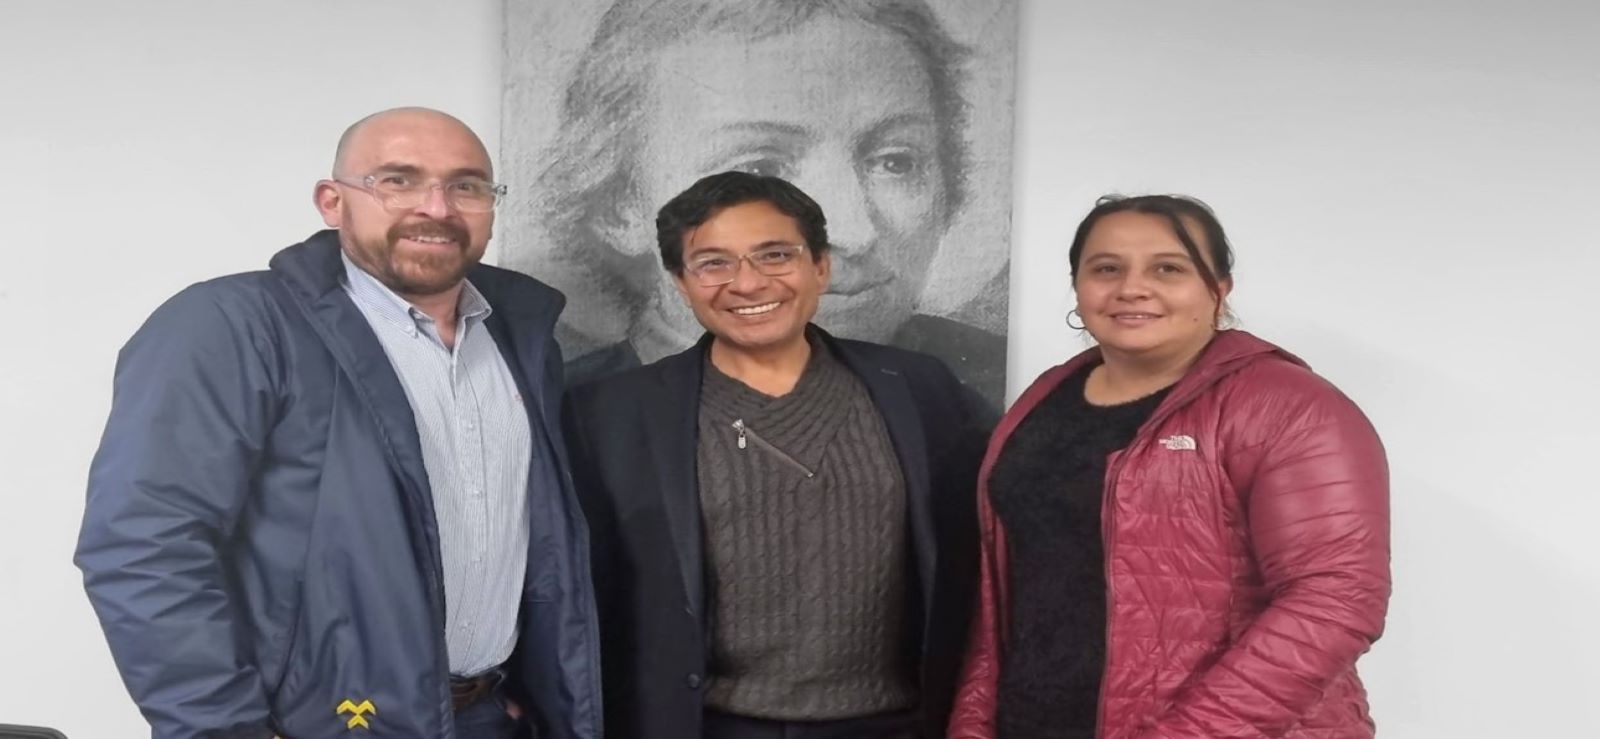 Nuestra estudiante, la profesora Diana Lara, comparte con el profesor Luis E. Vásquez y el decano de la Facultad, profesor Diego Barragán, en las instalaciones de la Facultad.